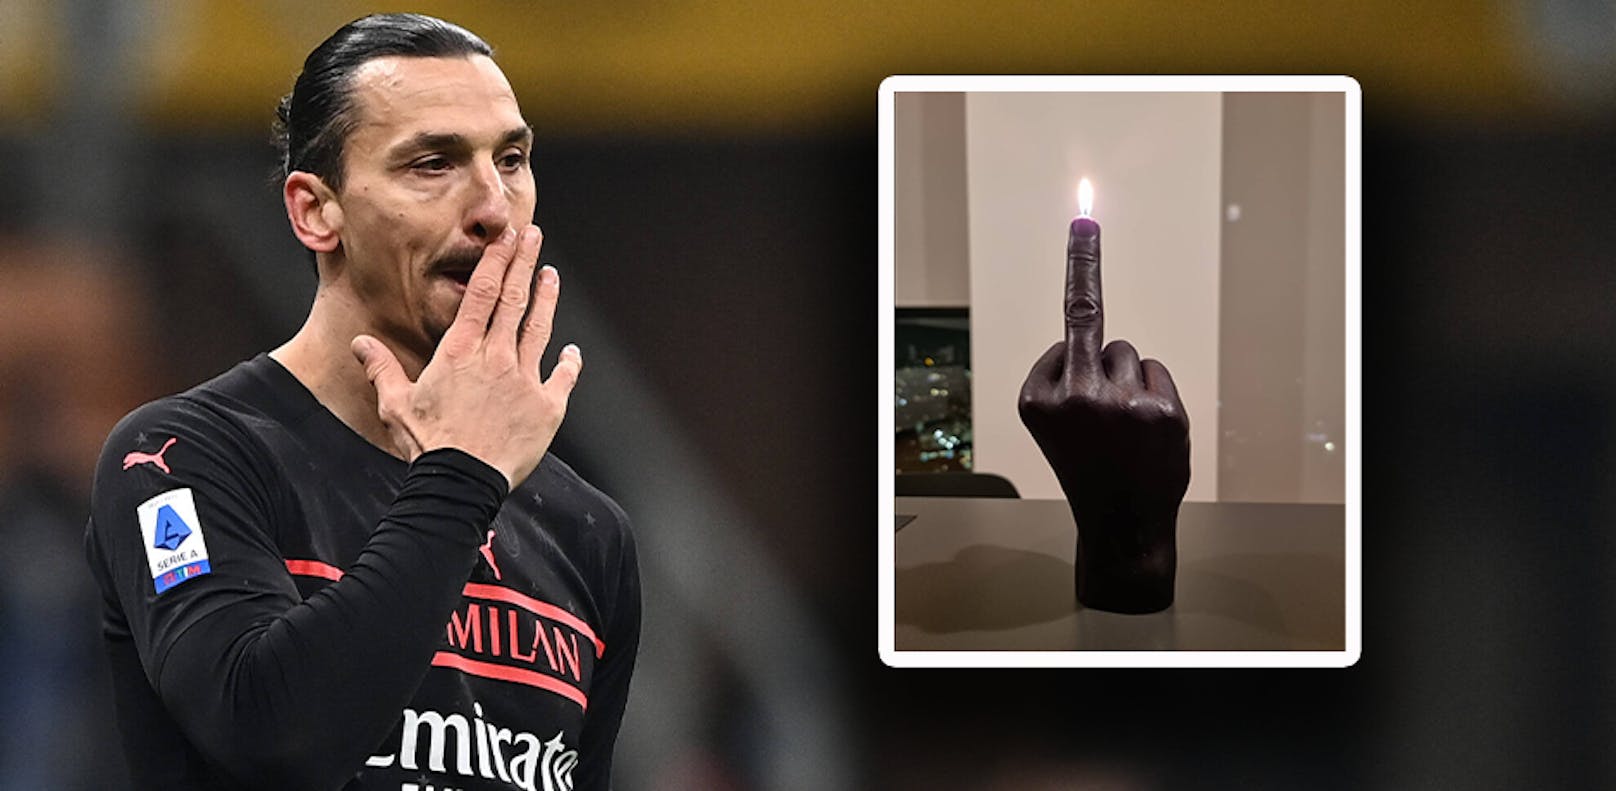 Ibrahimovic feierte Weihnachten mit Mittelfinger-Kerze